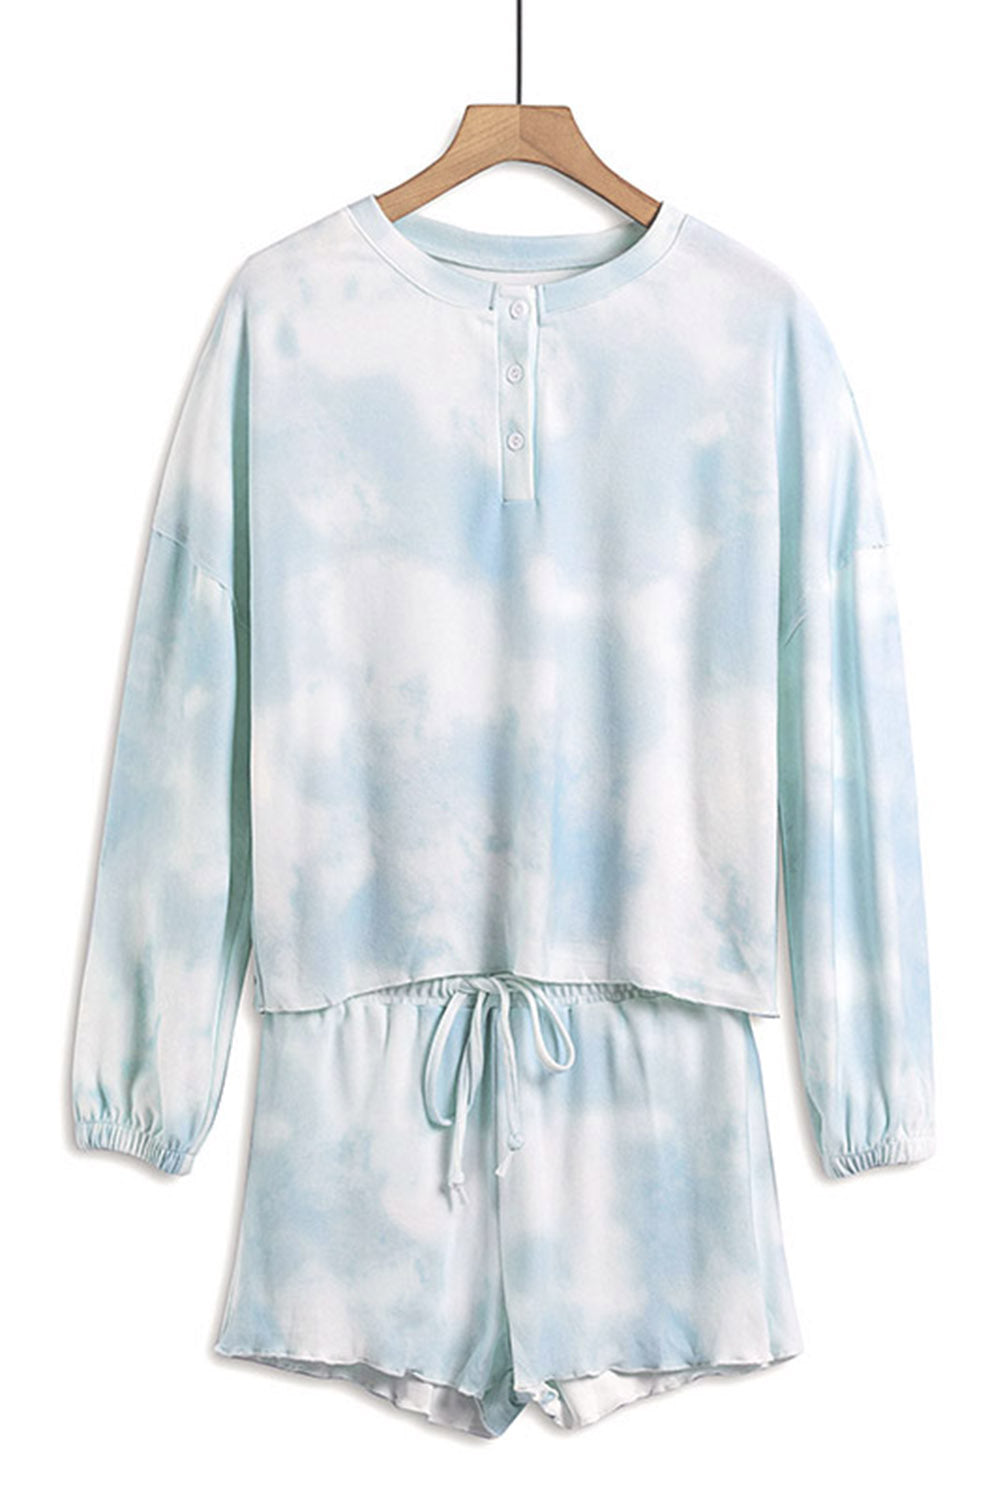 Ensemble Pyjama Femme Short Bleu Ciel Tie Dye Tricot Manches Longues